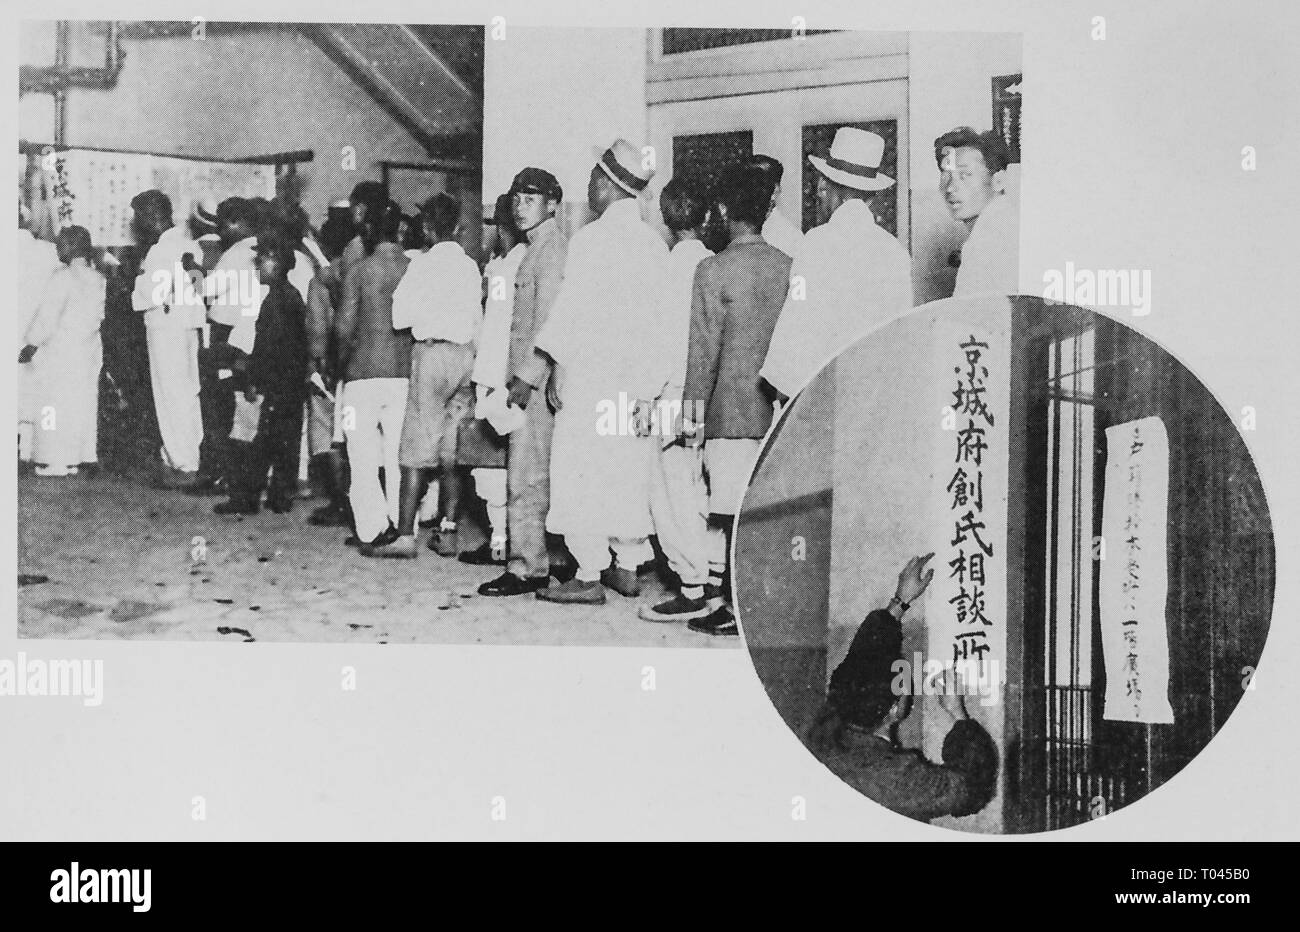 Création de nom de famille de style japonais pour peuple coréen, au cours de la domination japonaise,Gyeongseong (maintenant) c 1940. Collection privée. Banque D'Images